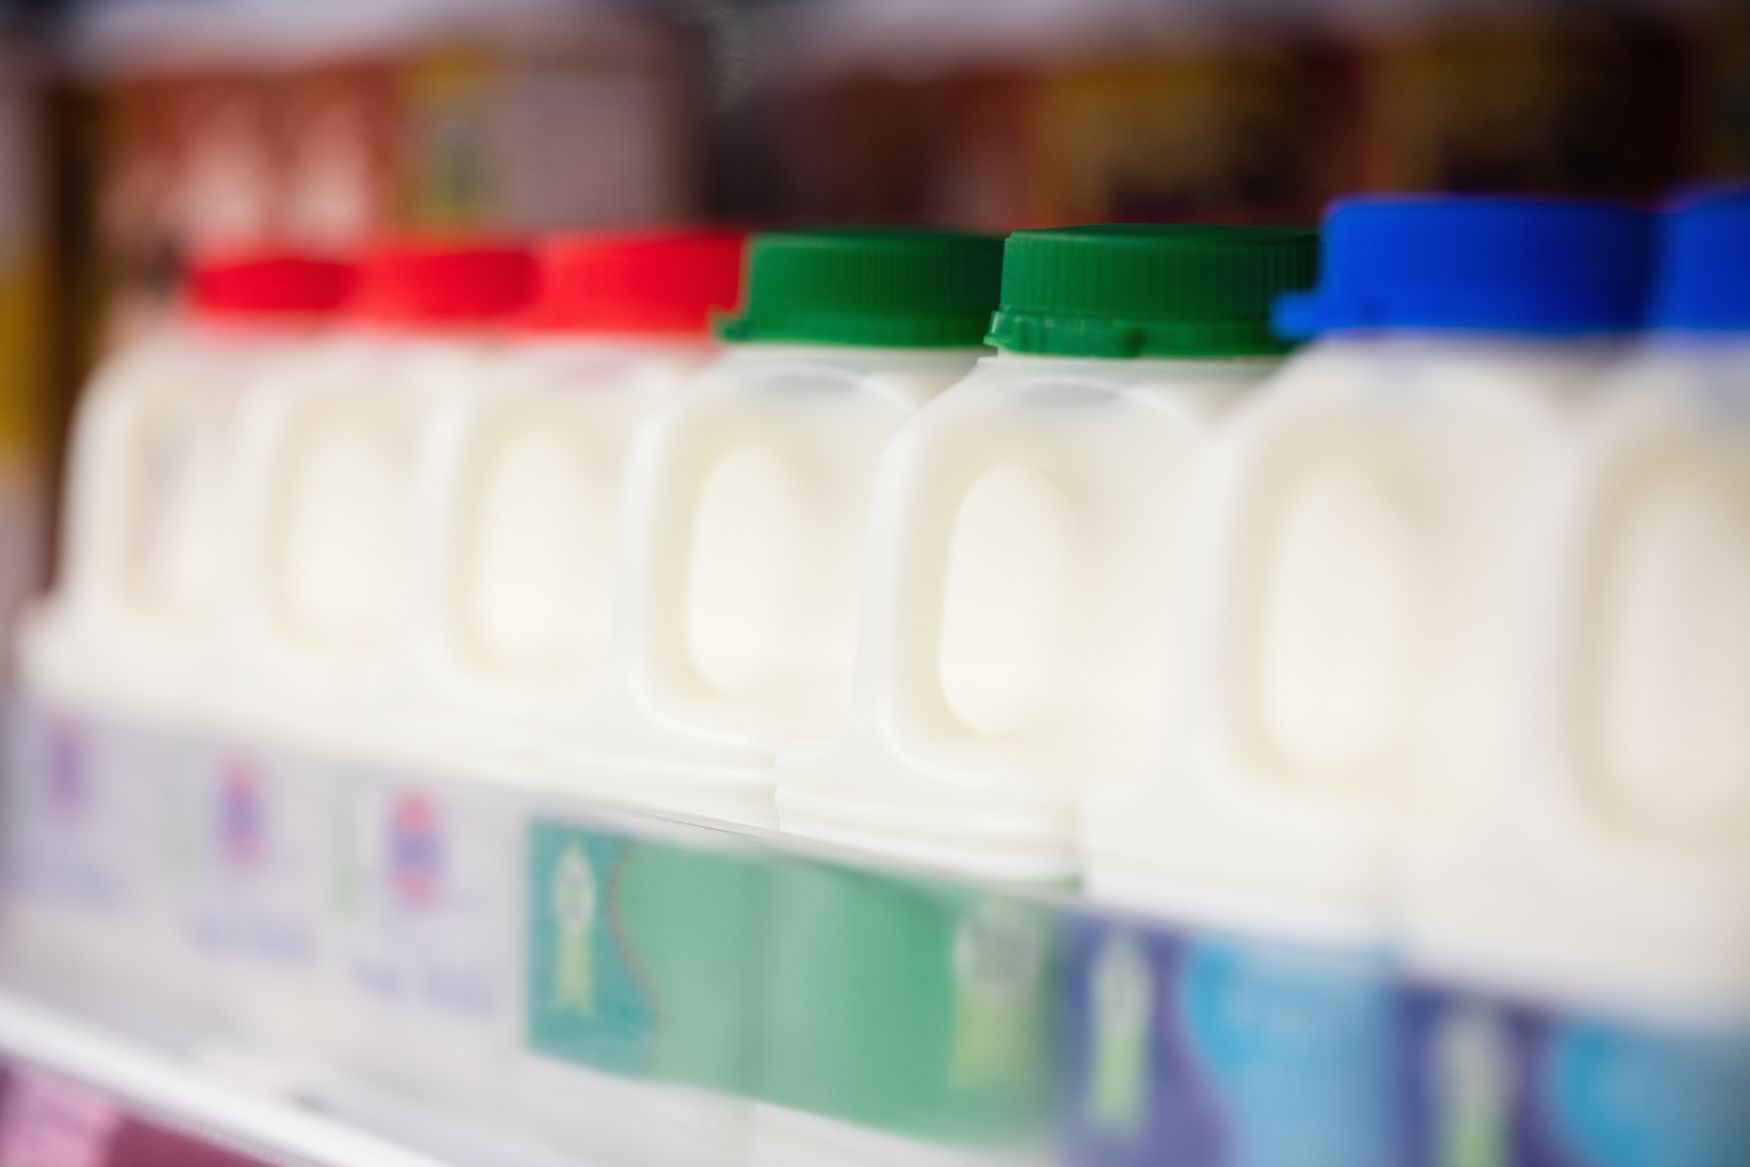 Mléko mléčný výrobek milk plasty obchod